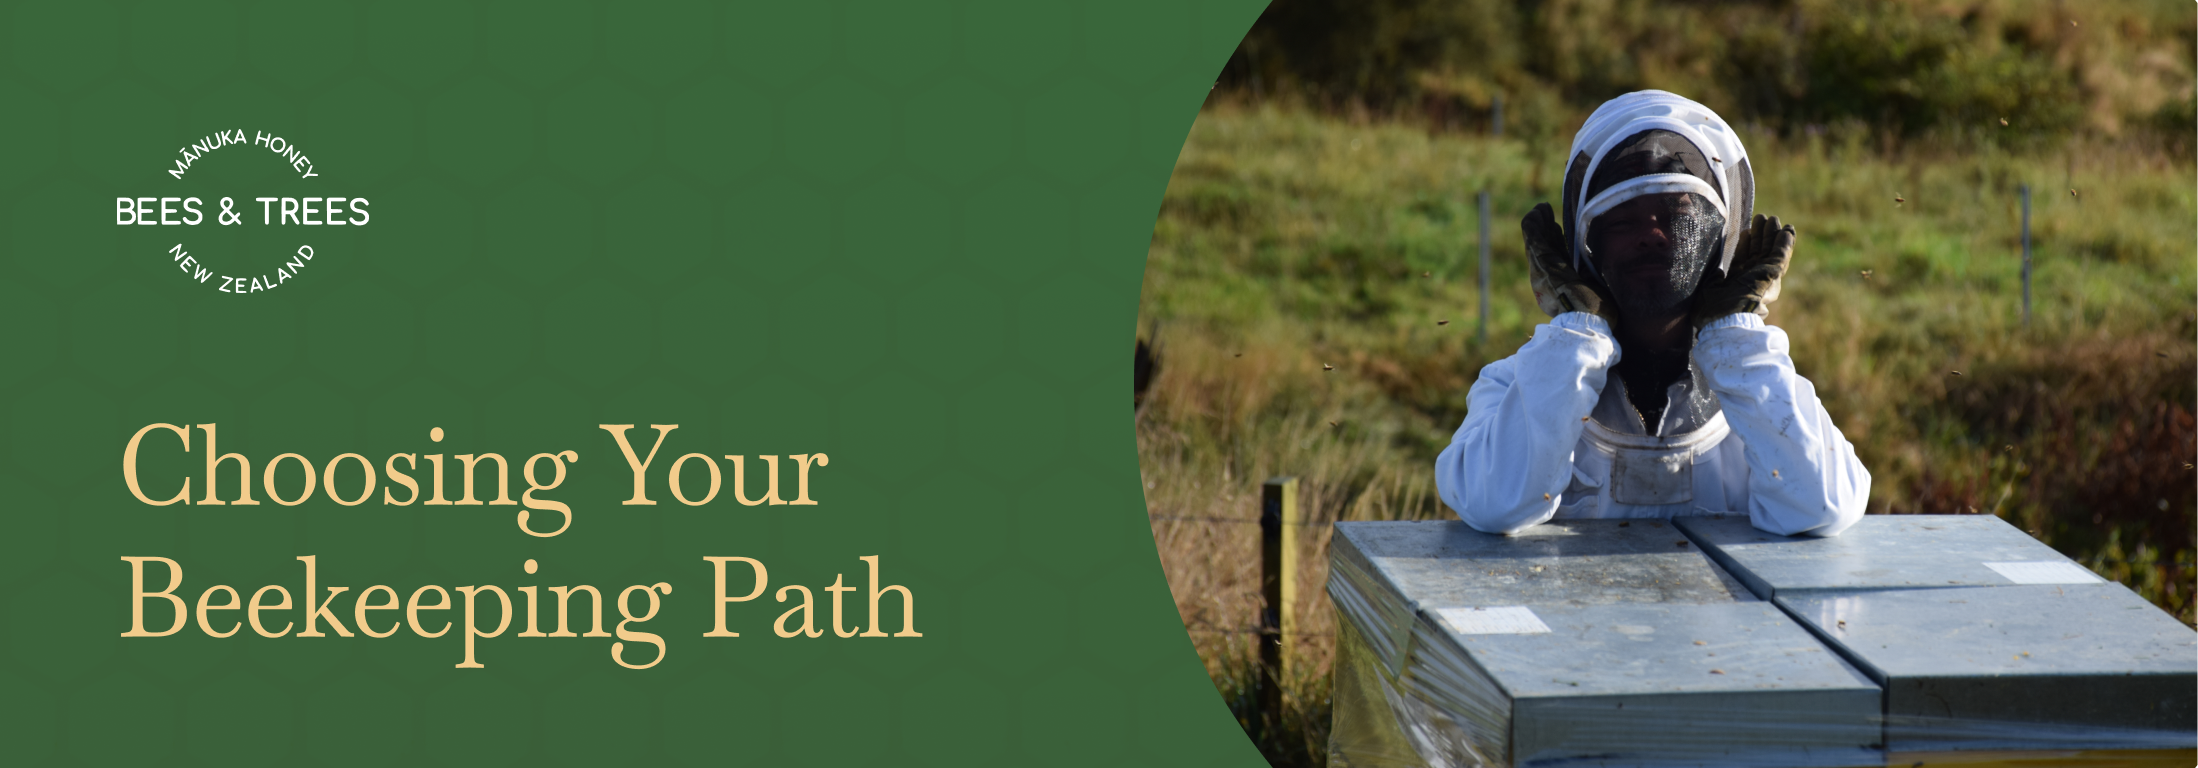 Choosing Your Beekeeping Path